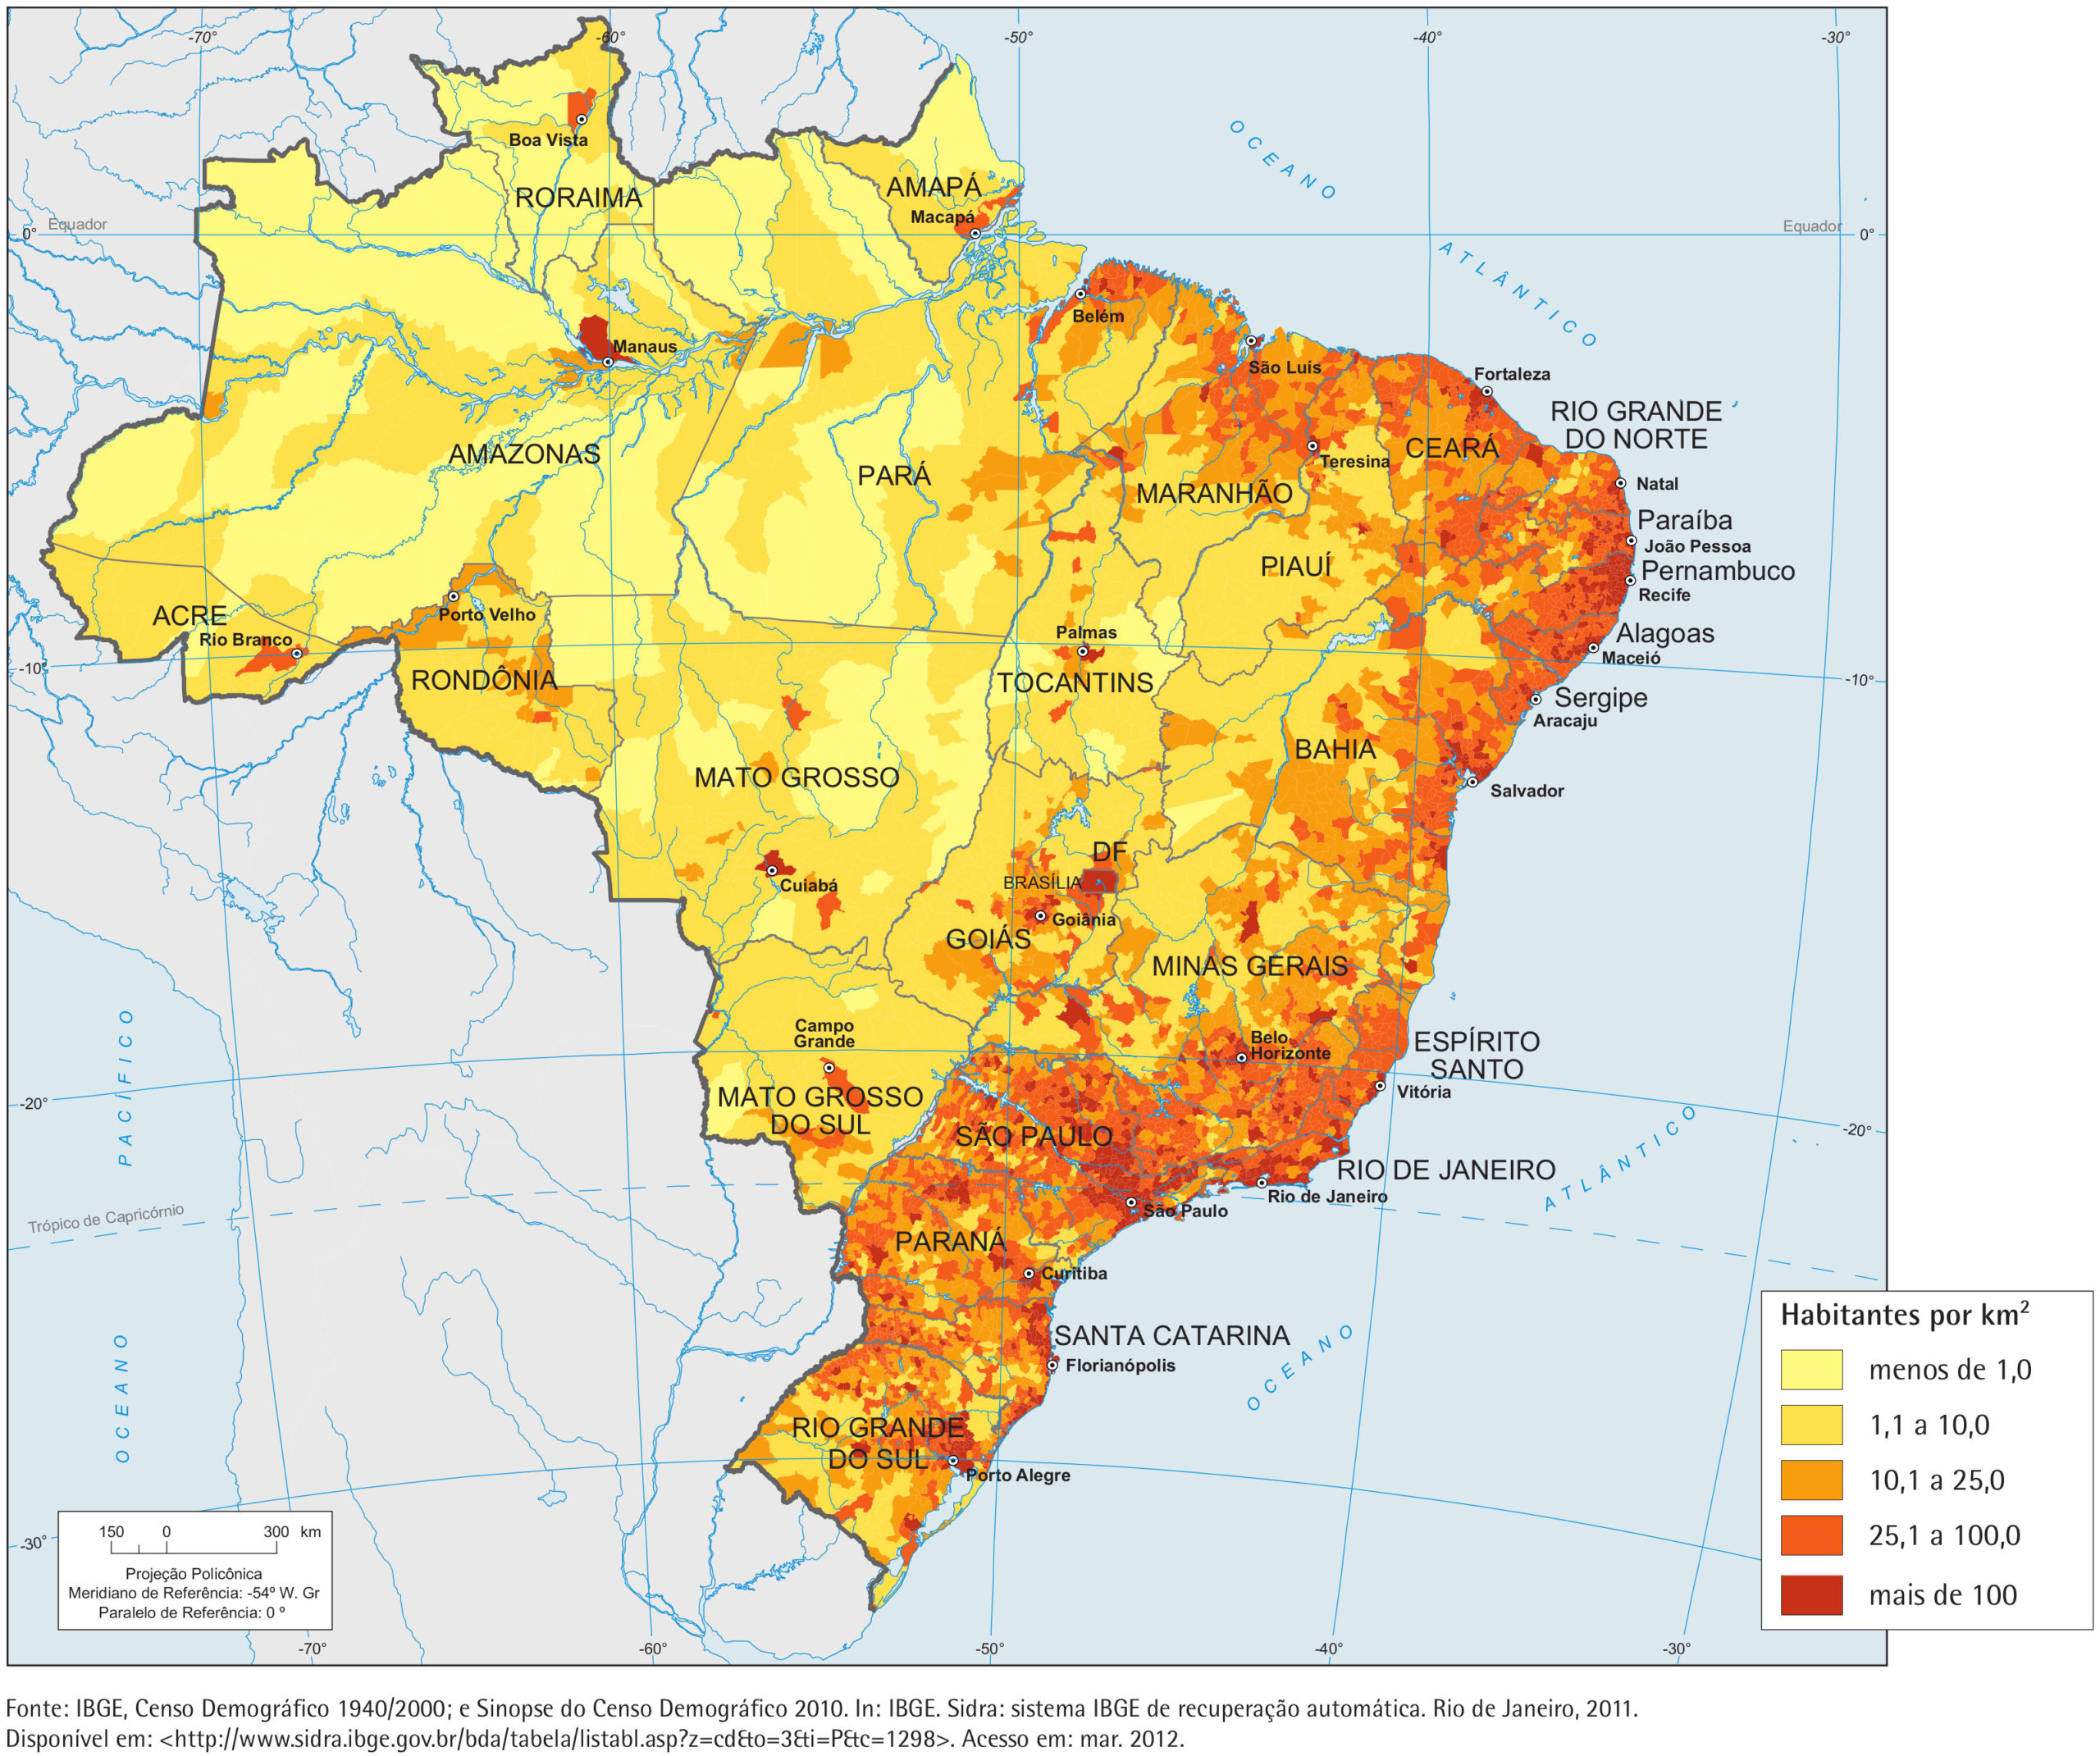 Назовите основную черту в размещении бразилии. Плотность населения Бразилии карта. Плотность населения Бразилии. Размещение населения Бразилии на карте. Карта населения Бразилии.